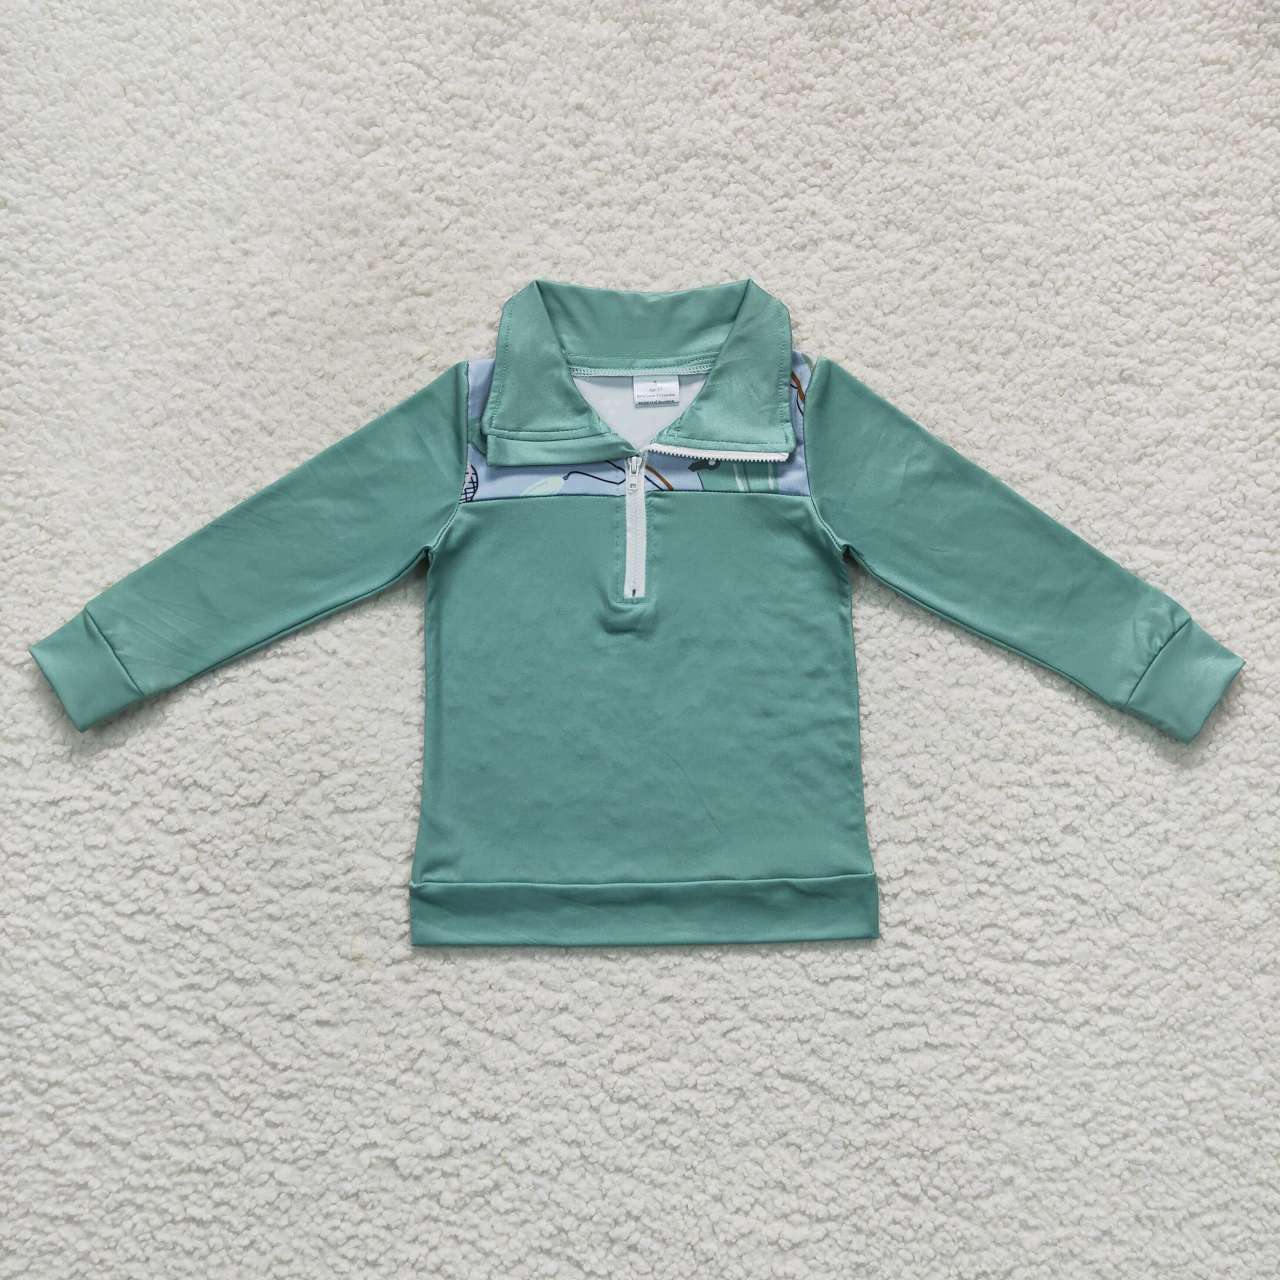 BT0335 toddler boy clothes fishing boy winter zipper top